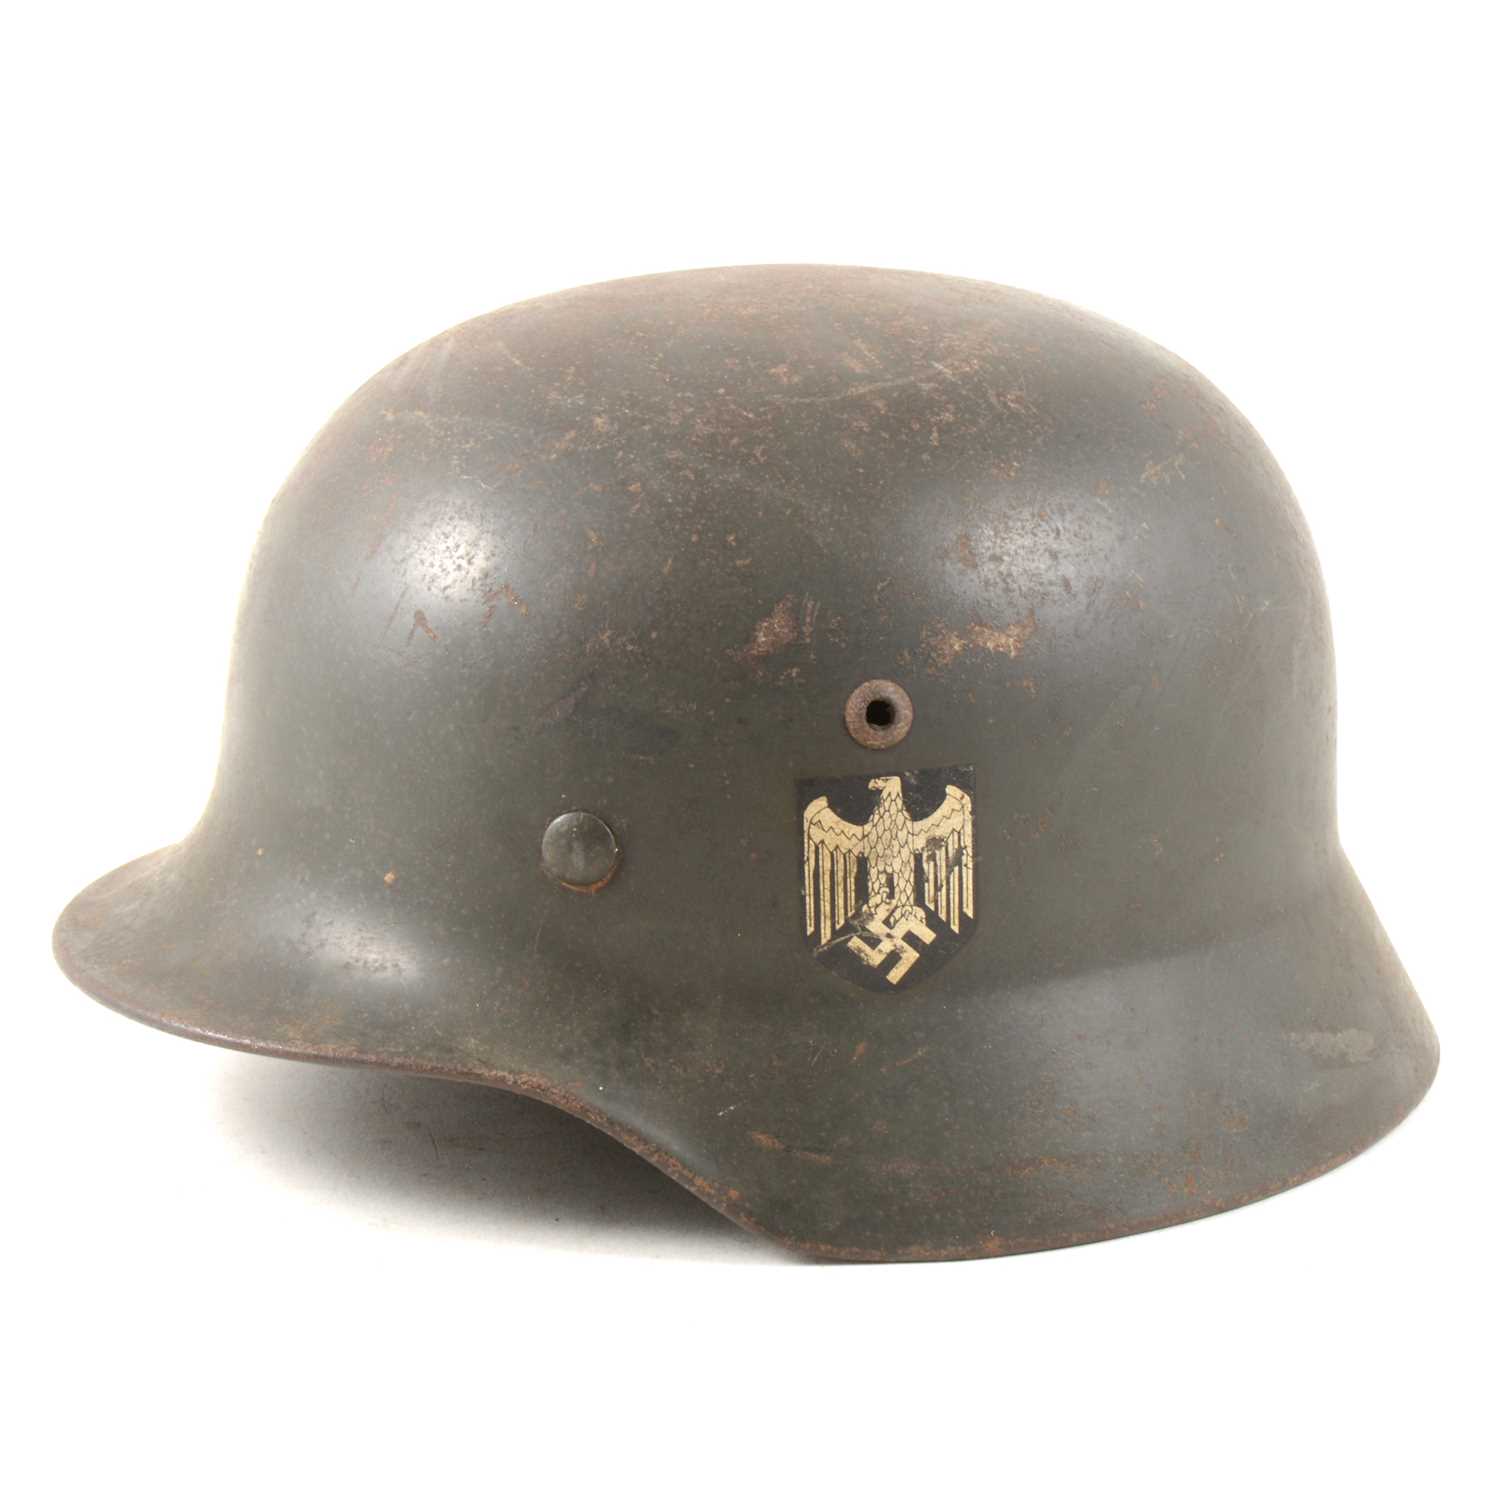 Lot 113 - WWII German steel war helmet with side decals.